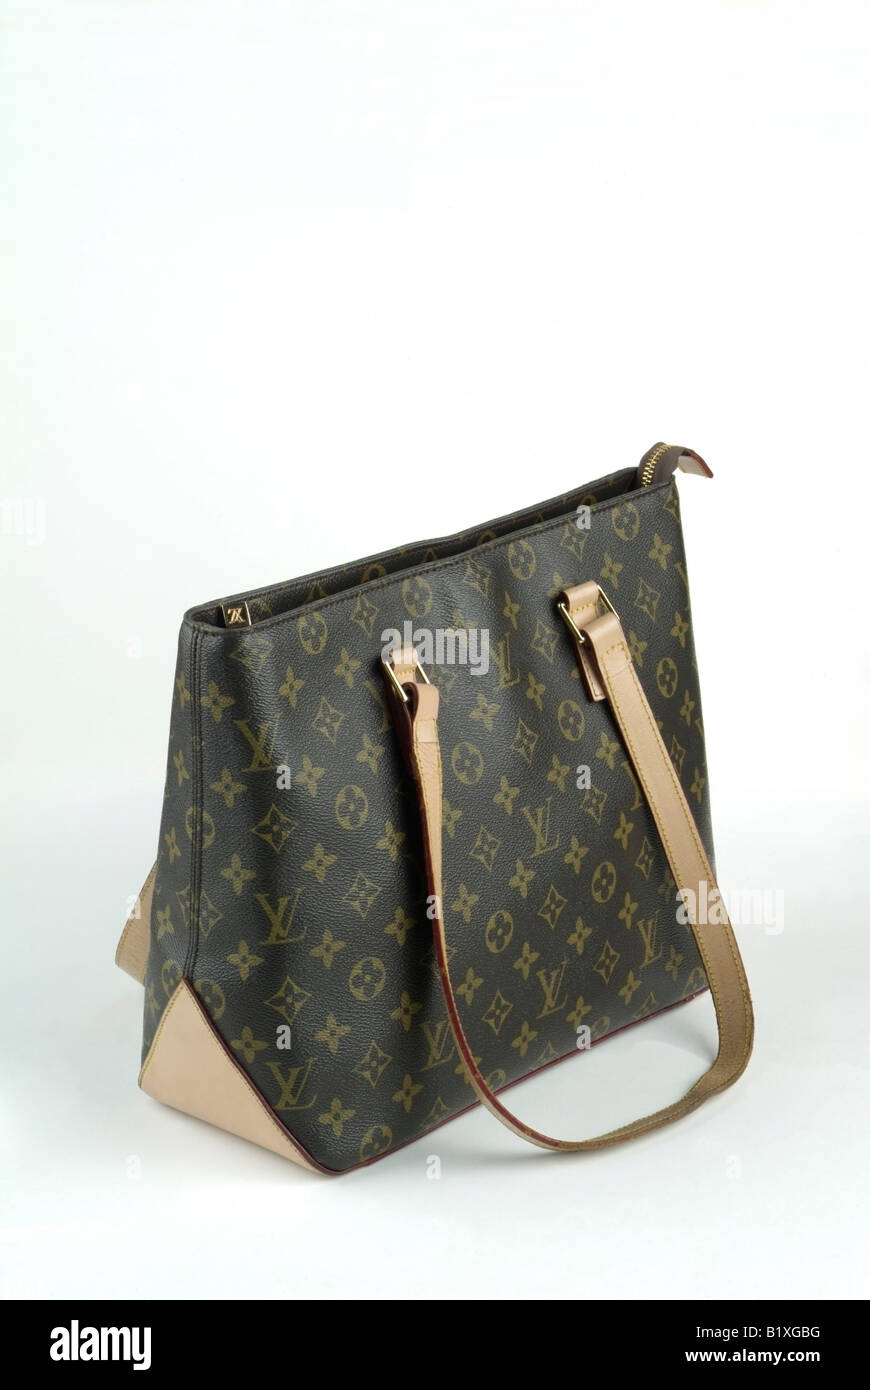 A counterfeit Louis Vuitton women's handbag. Stock Photo